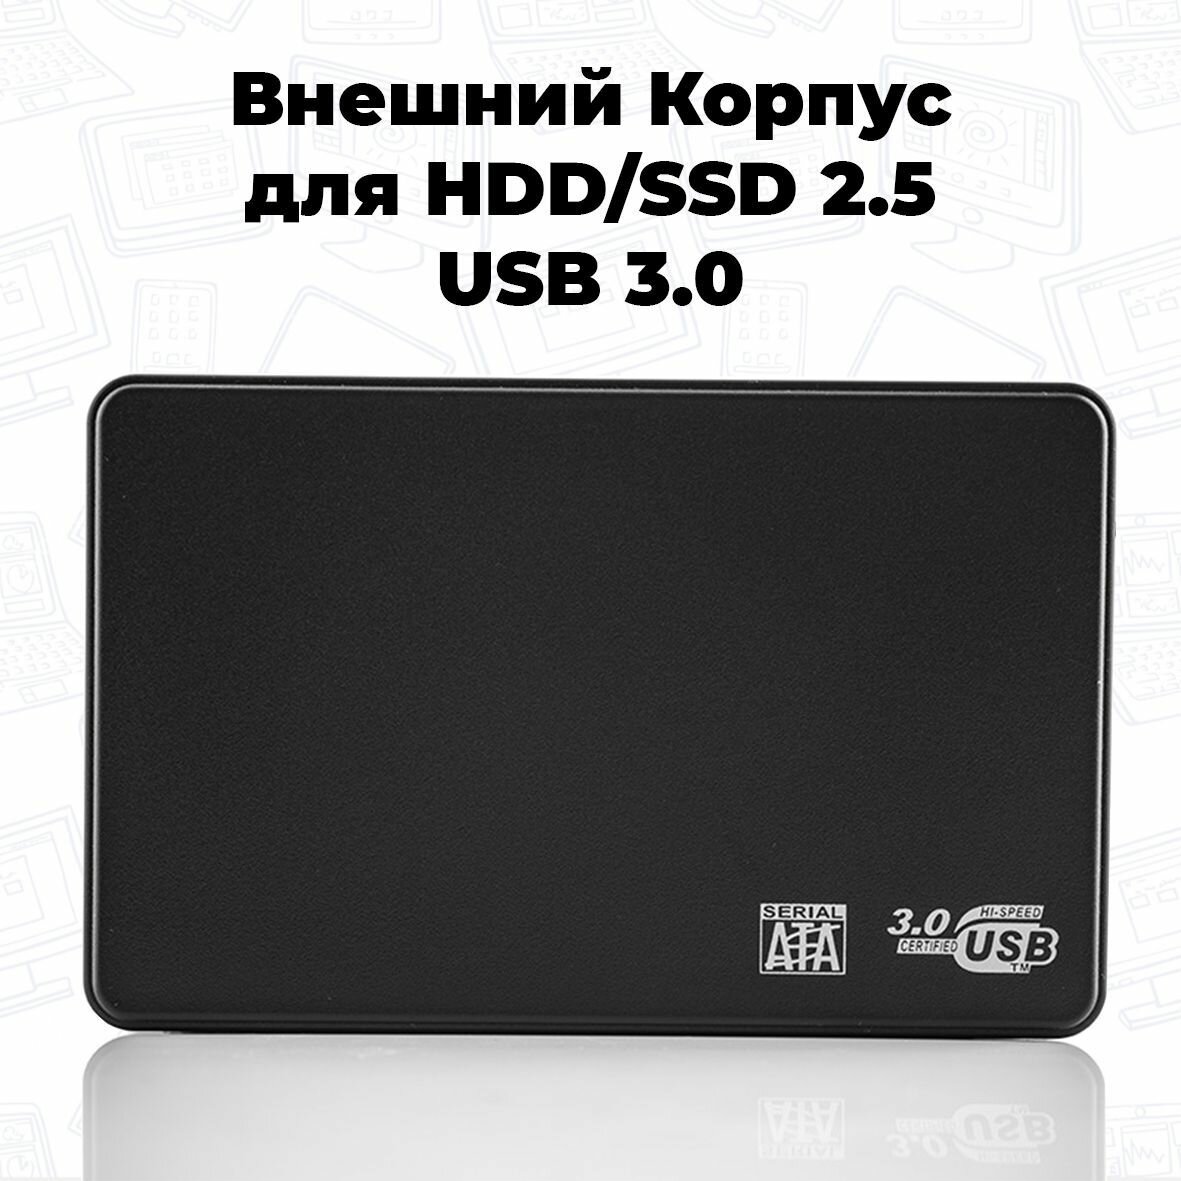 Внешний корпус для HDD SSD 2.5 usb 3.0